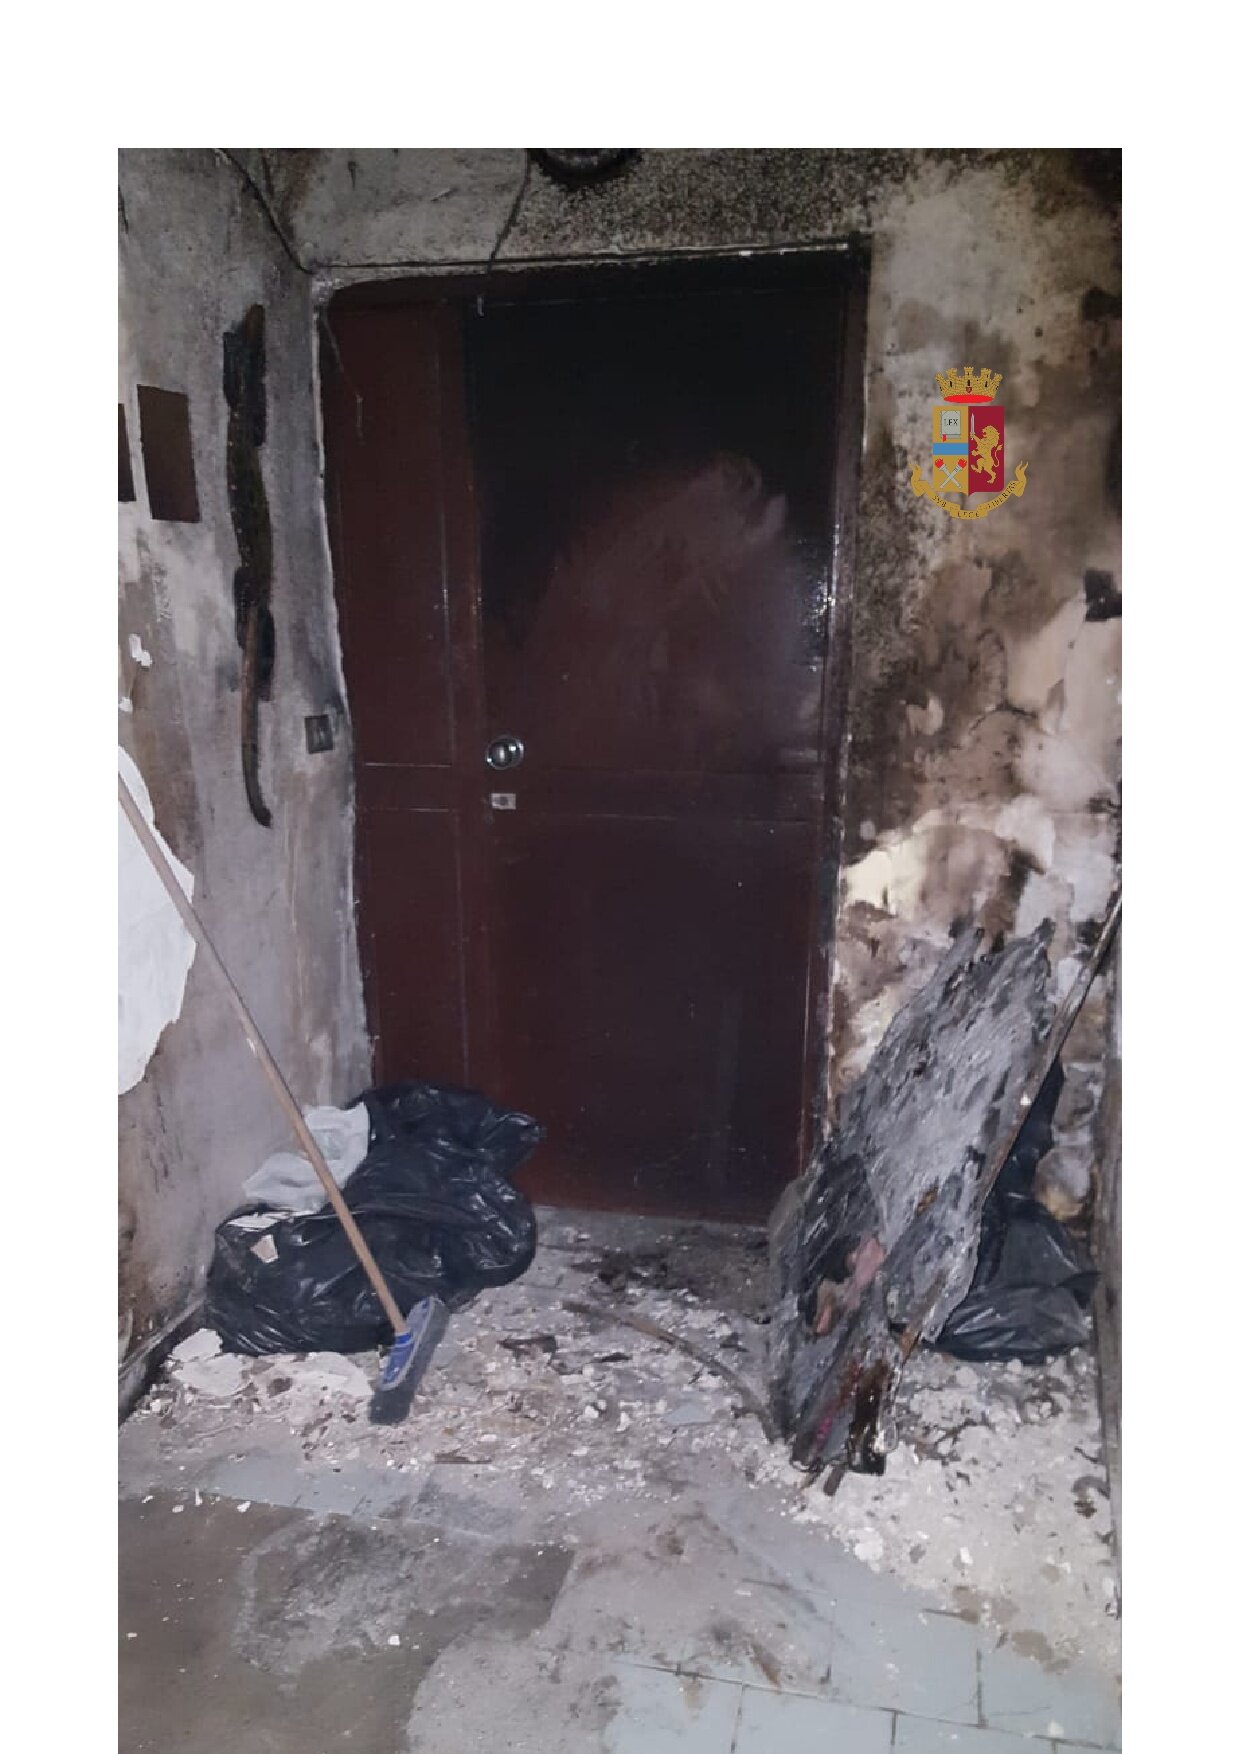 Palazzo in fiamme a Bagnoli, la polizia salva due donne e una bambina. LE FOTO